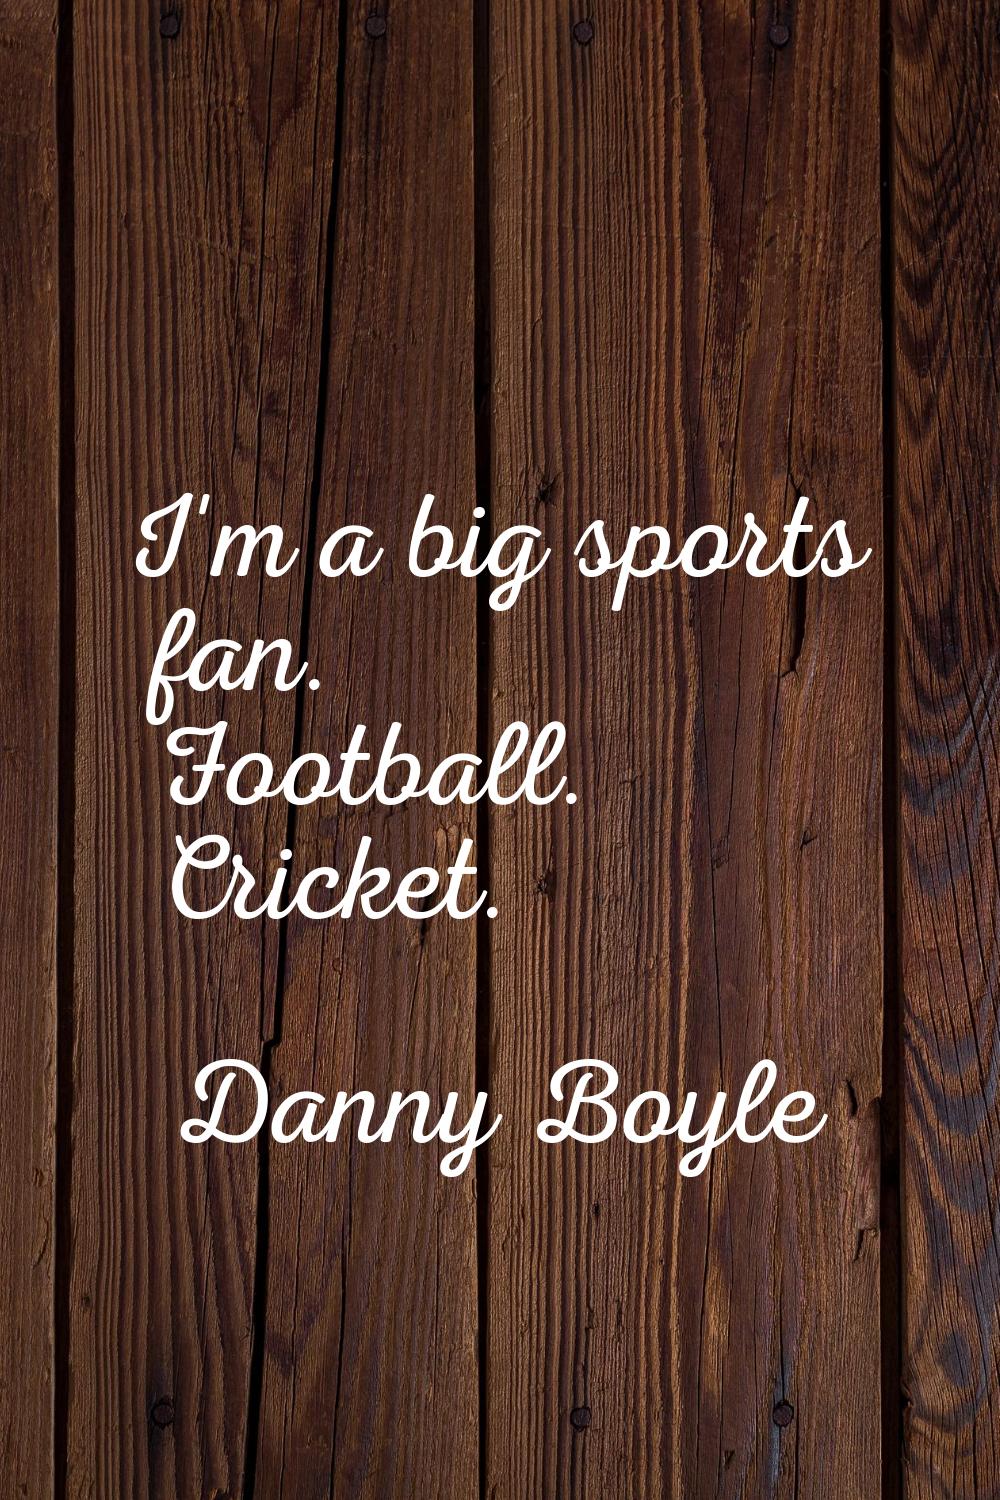 I'm a big sports fan. Football. Cricket.